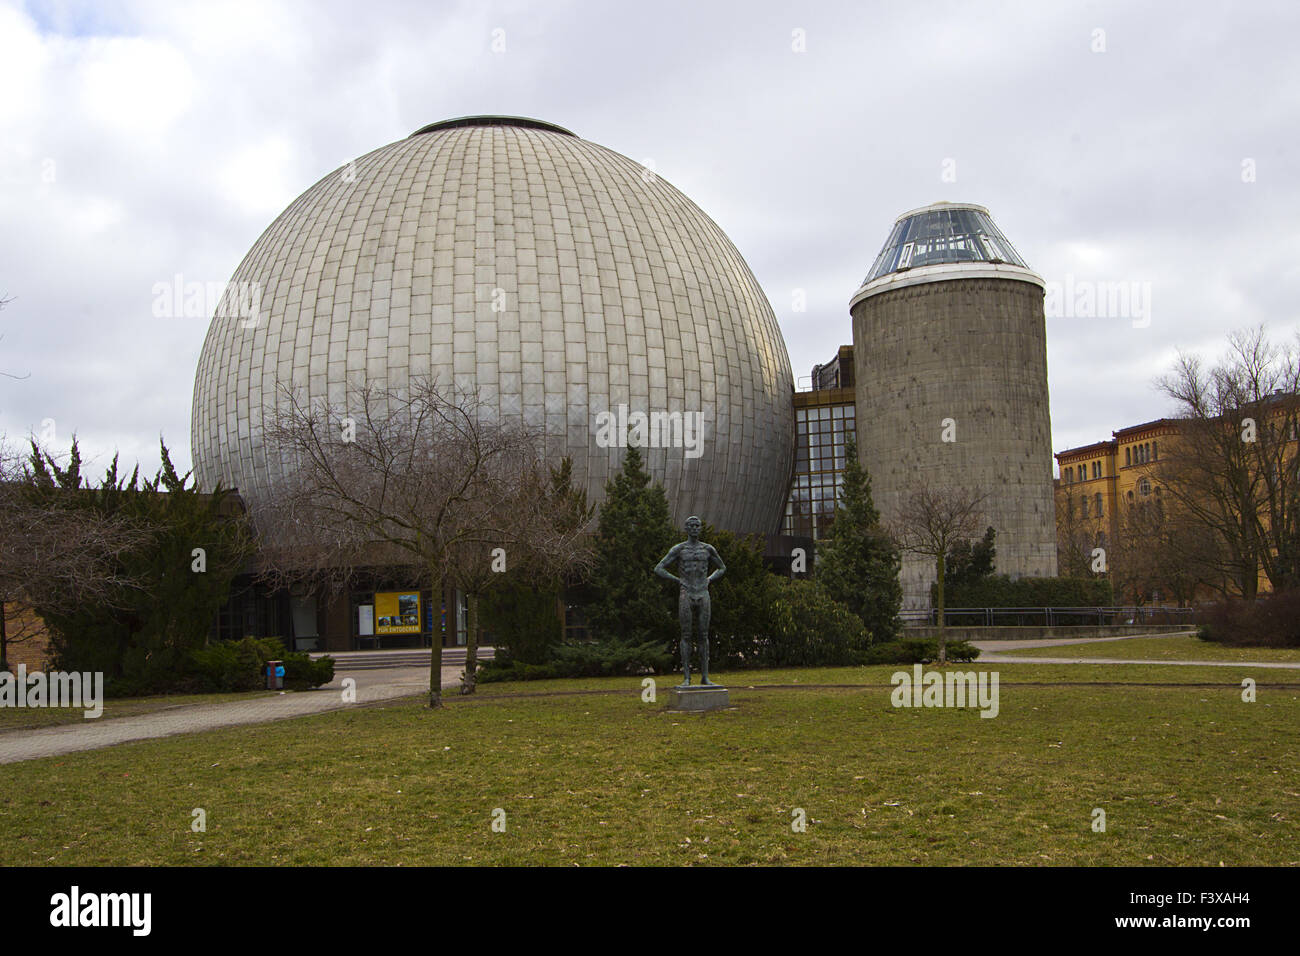 zeiss planetarium in berlin prenzlauer berg Stock Photo